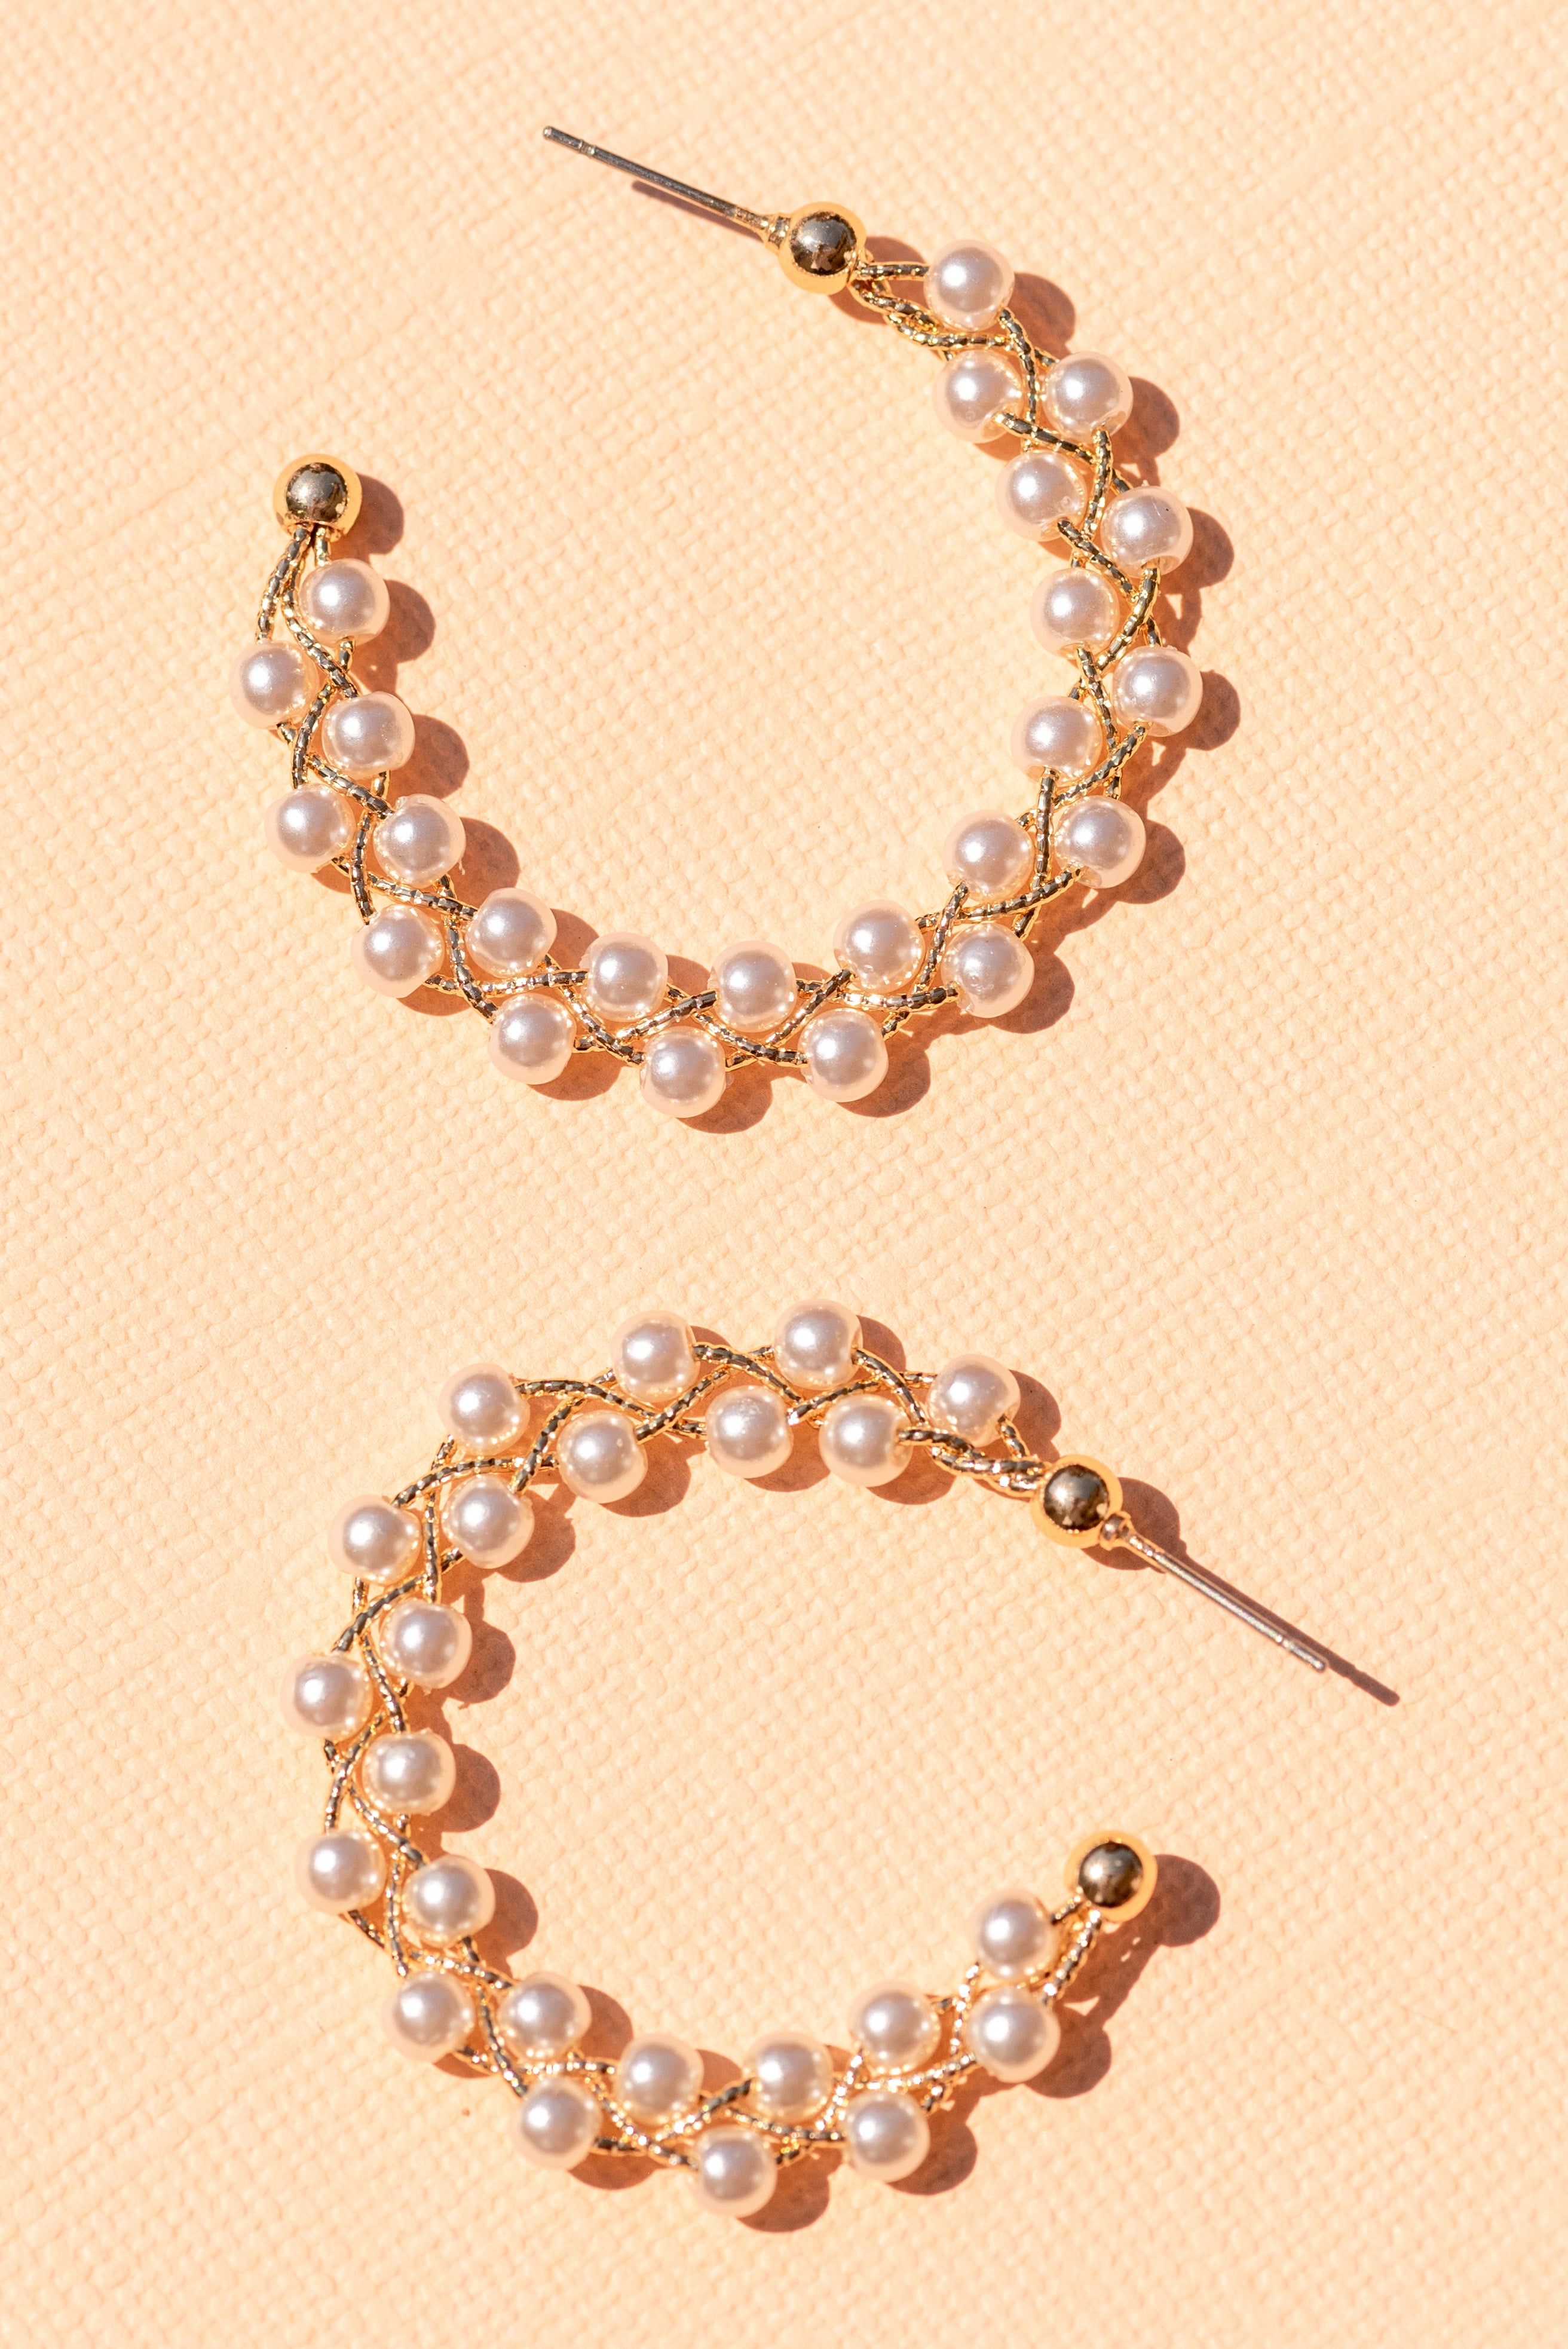 Type 1 Princess Pearls Earrings